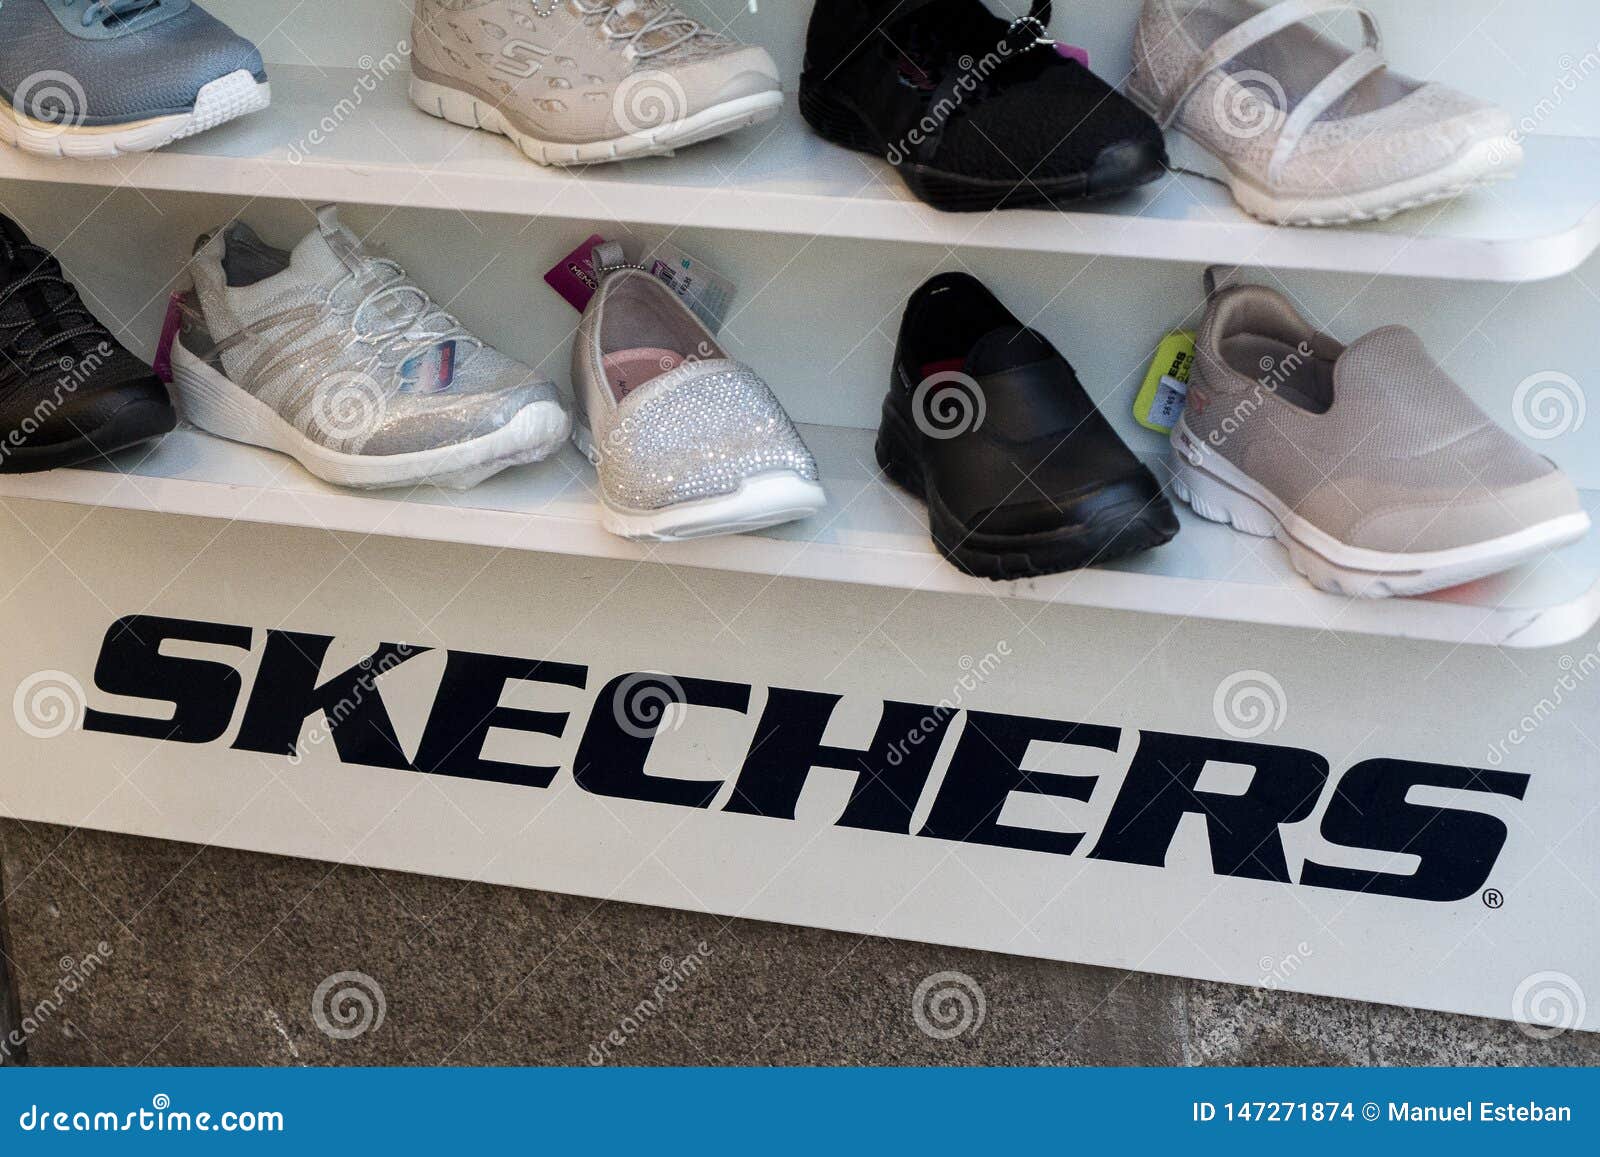 skechers shoe company